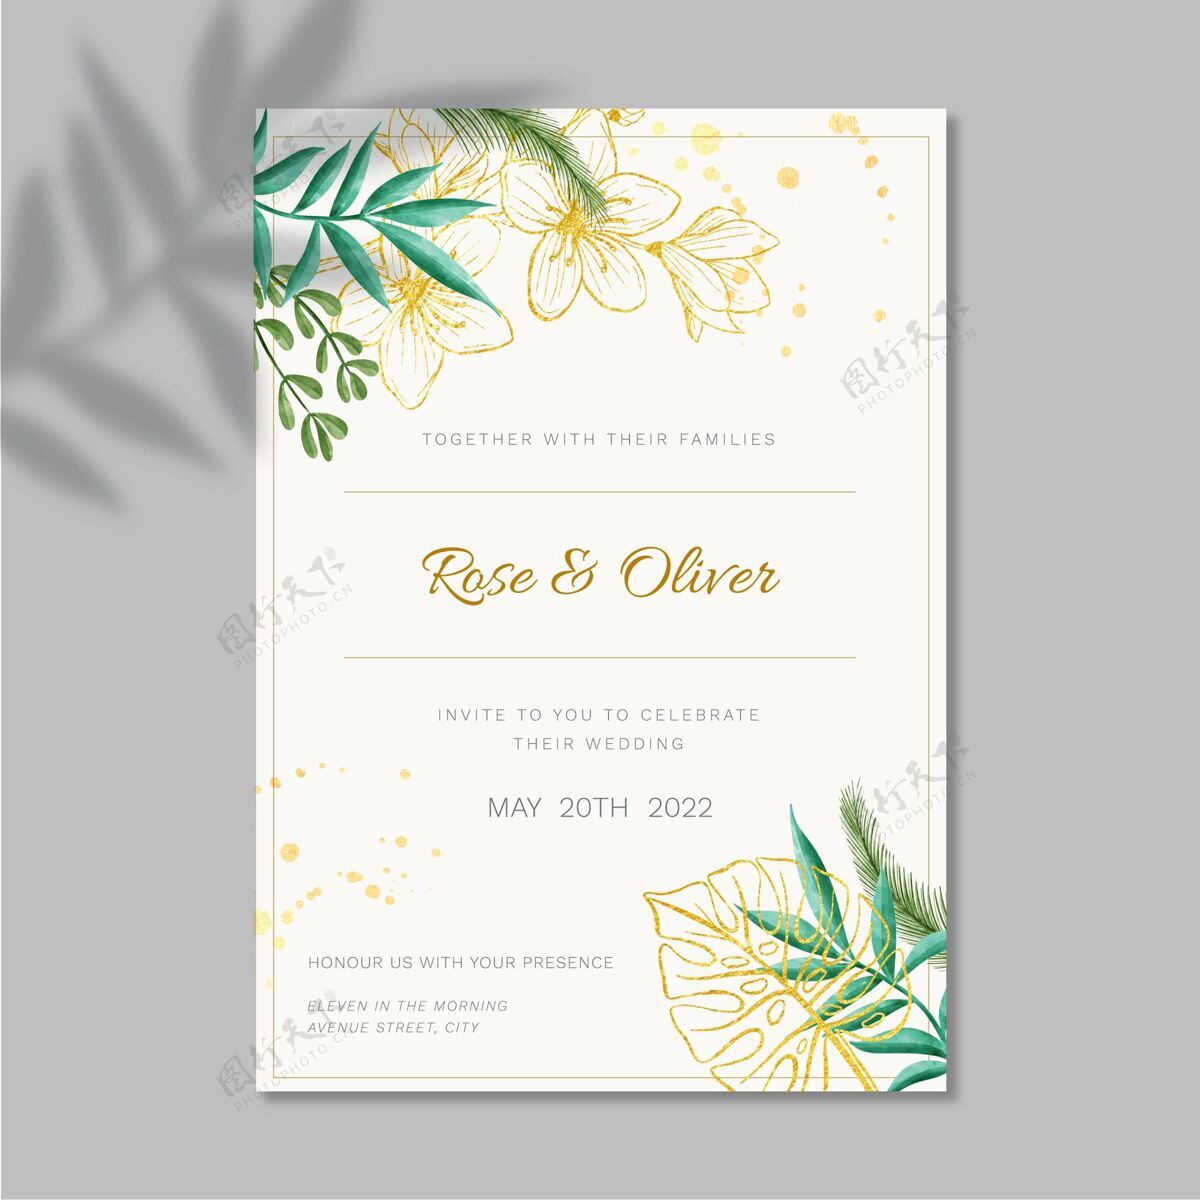 婚礼花卉结婚卡模板设计保存日期准备打印婚礼设计